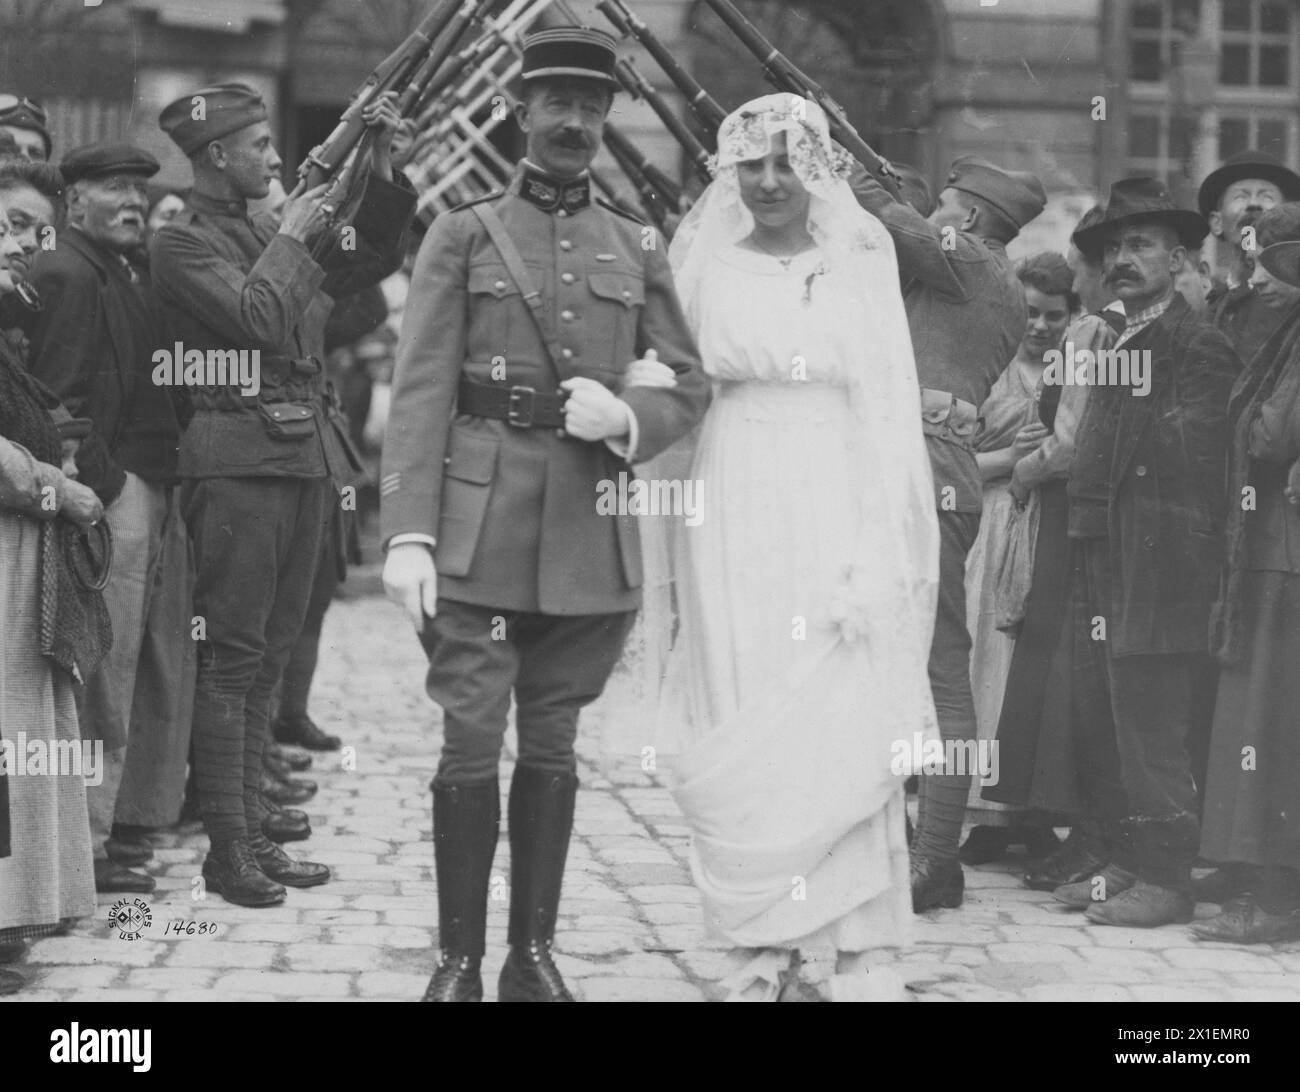 Il dottor Louis Merger scortò sua figlia lungo la navata al suo matrimonio con un soldato statunitense; Chaumont France ca. 1918 Foto Stock